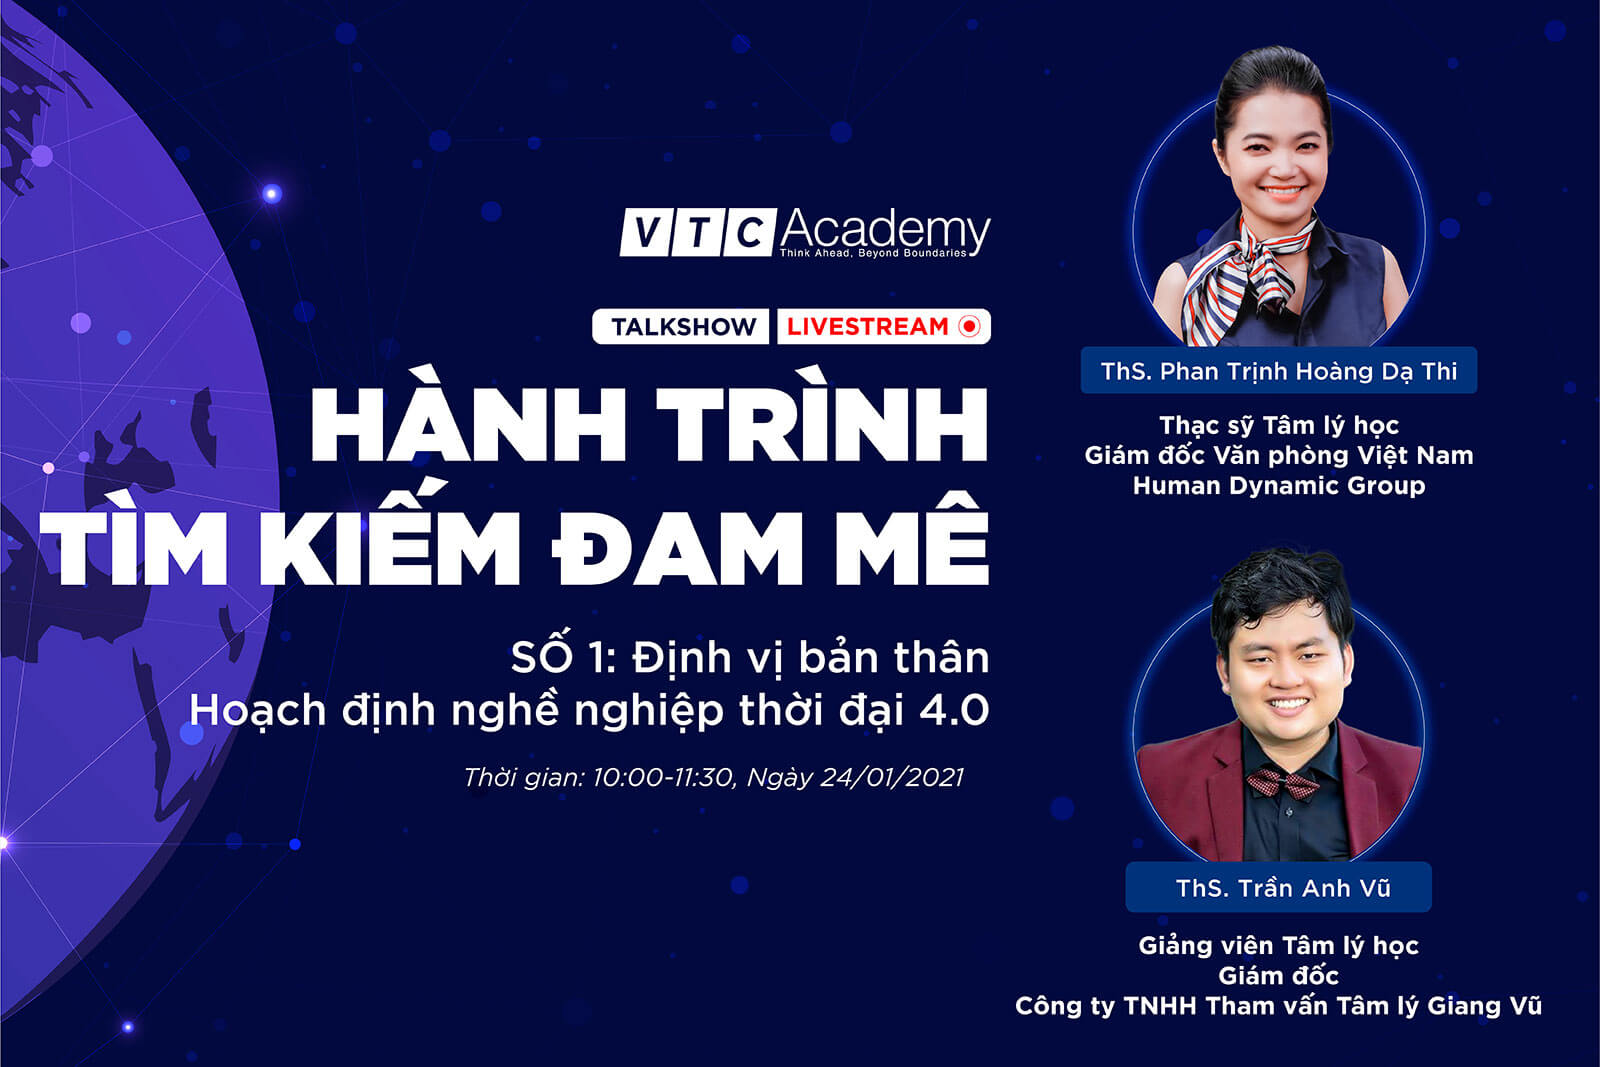 VTC Academy khởi động chuỗi talkshow trực tuyến “Hành trình tìm kiếm đam mê” và “Chuyện người trong nghề”